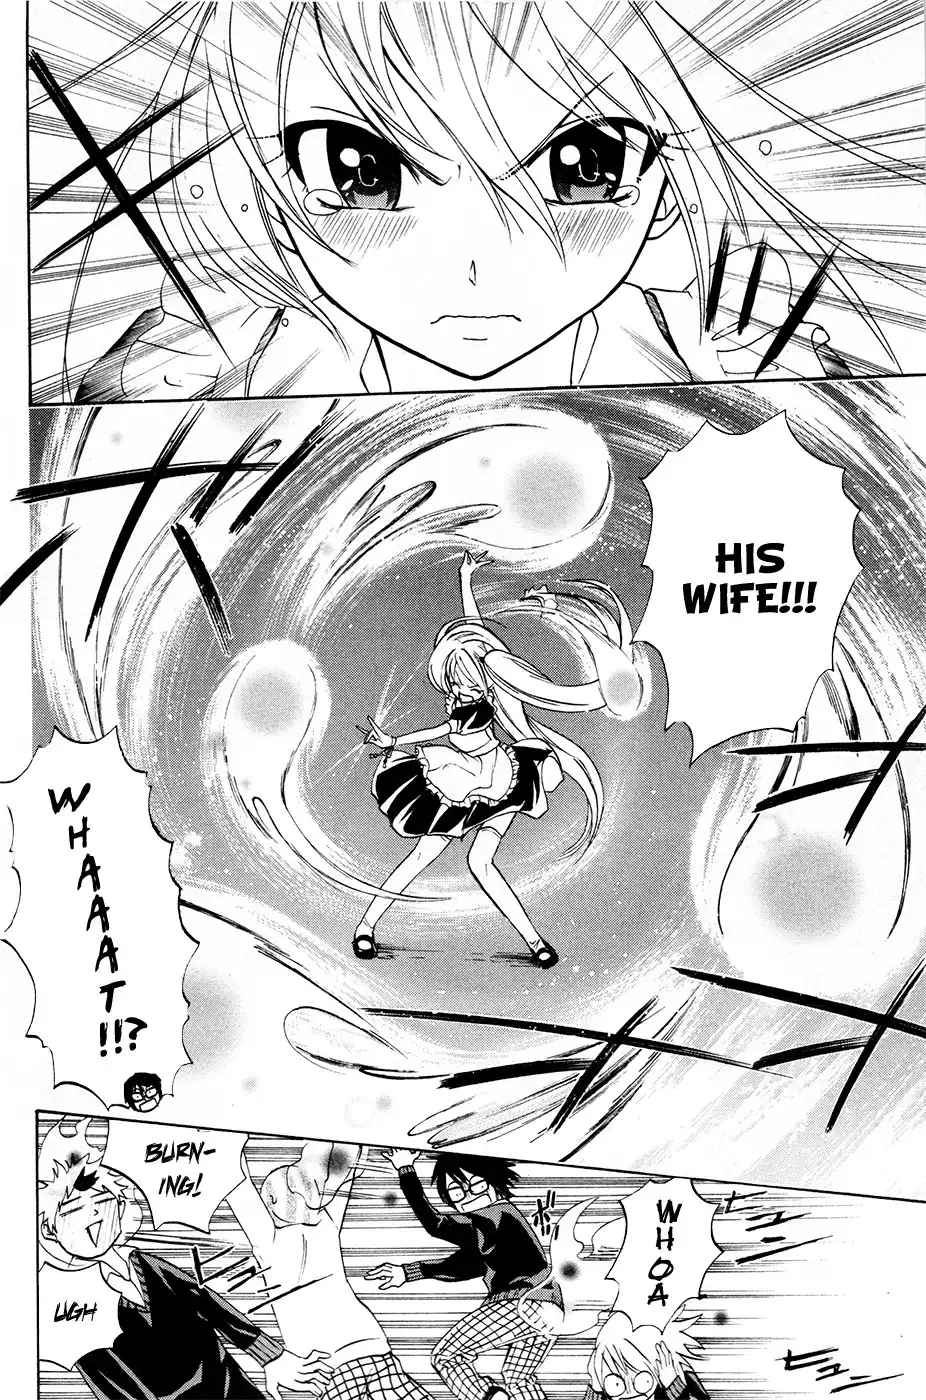 Kitsune no Yomeiri Chapter 14